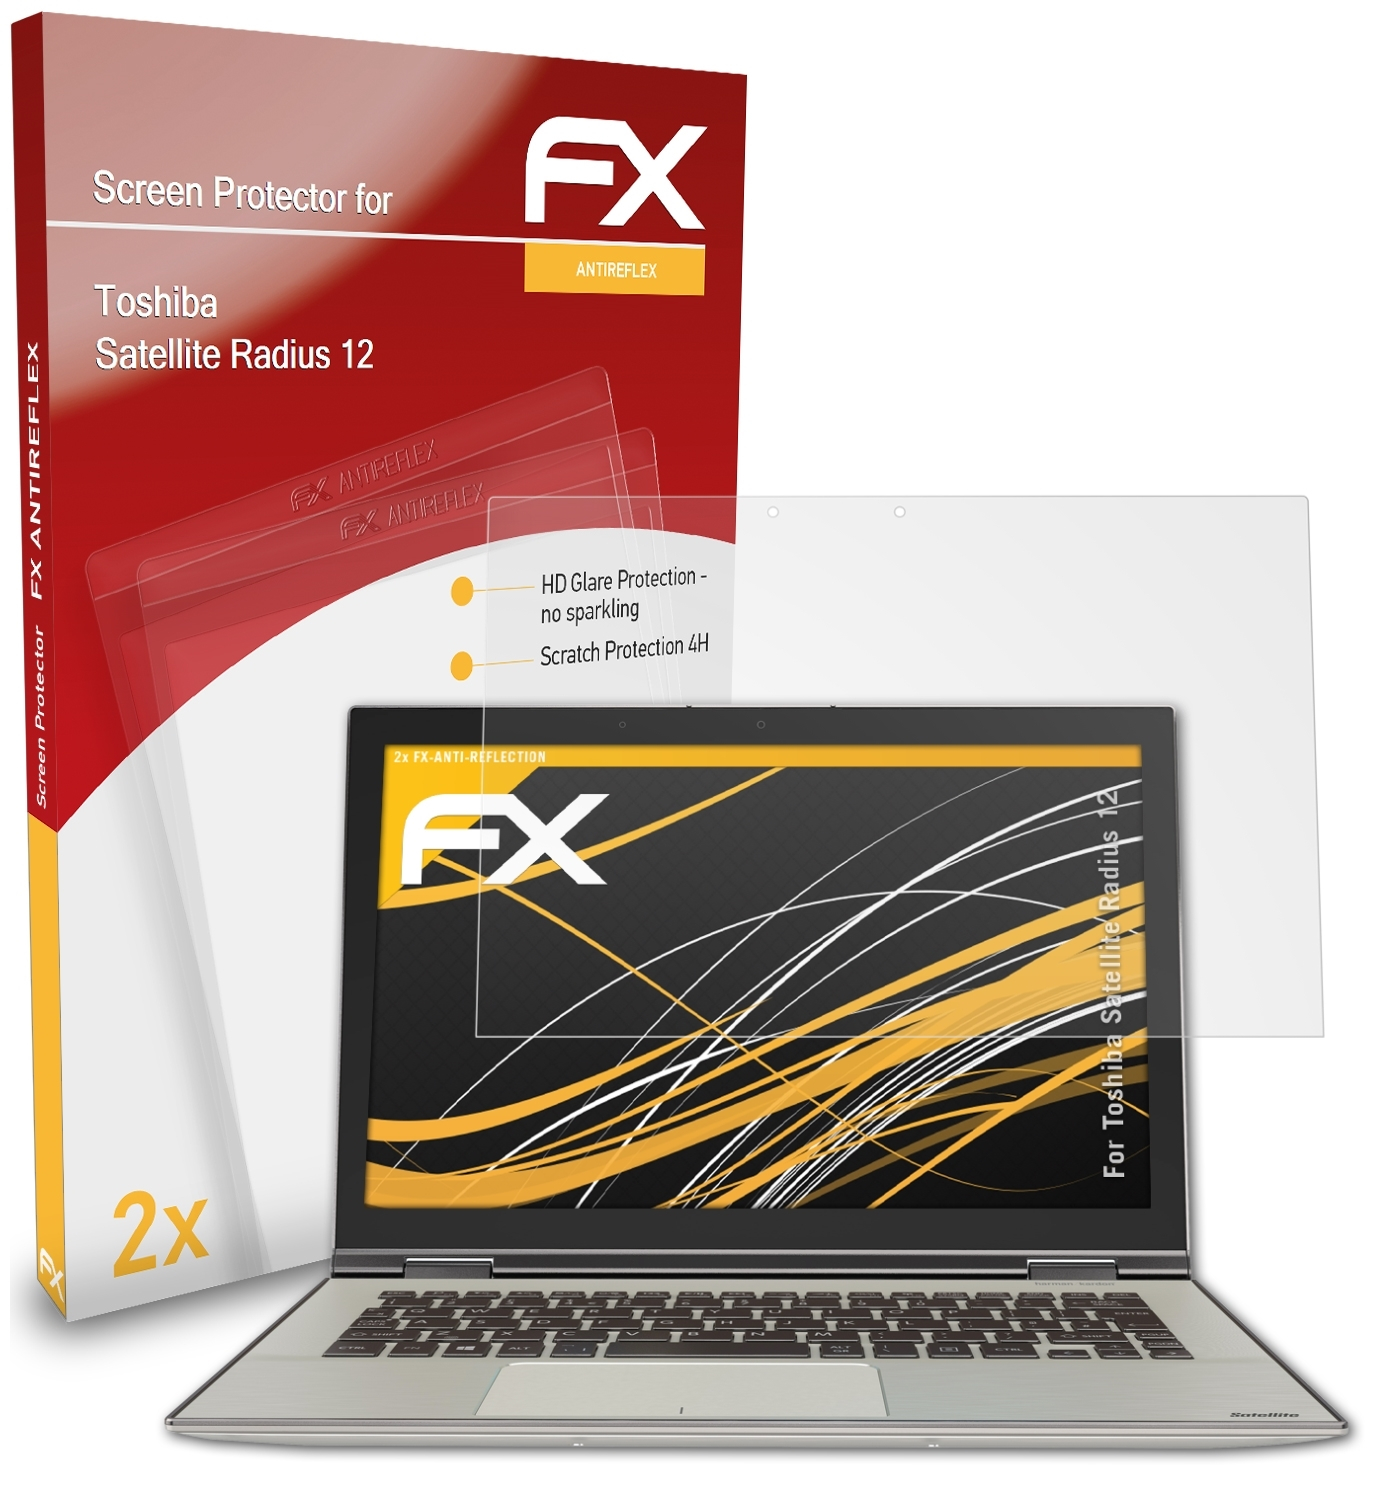 ATFOLIX 2x Radius Satellite Toshiba Displayschutz(für 12) FX-Antireflex